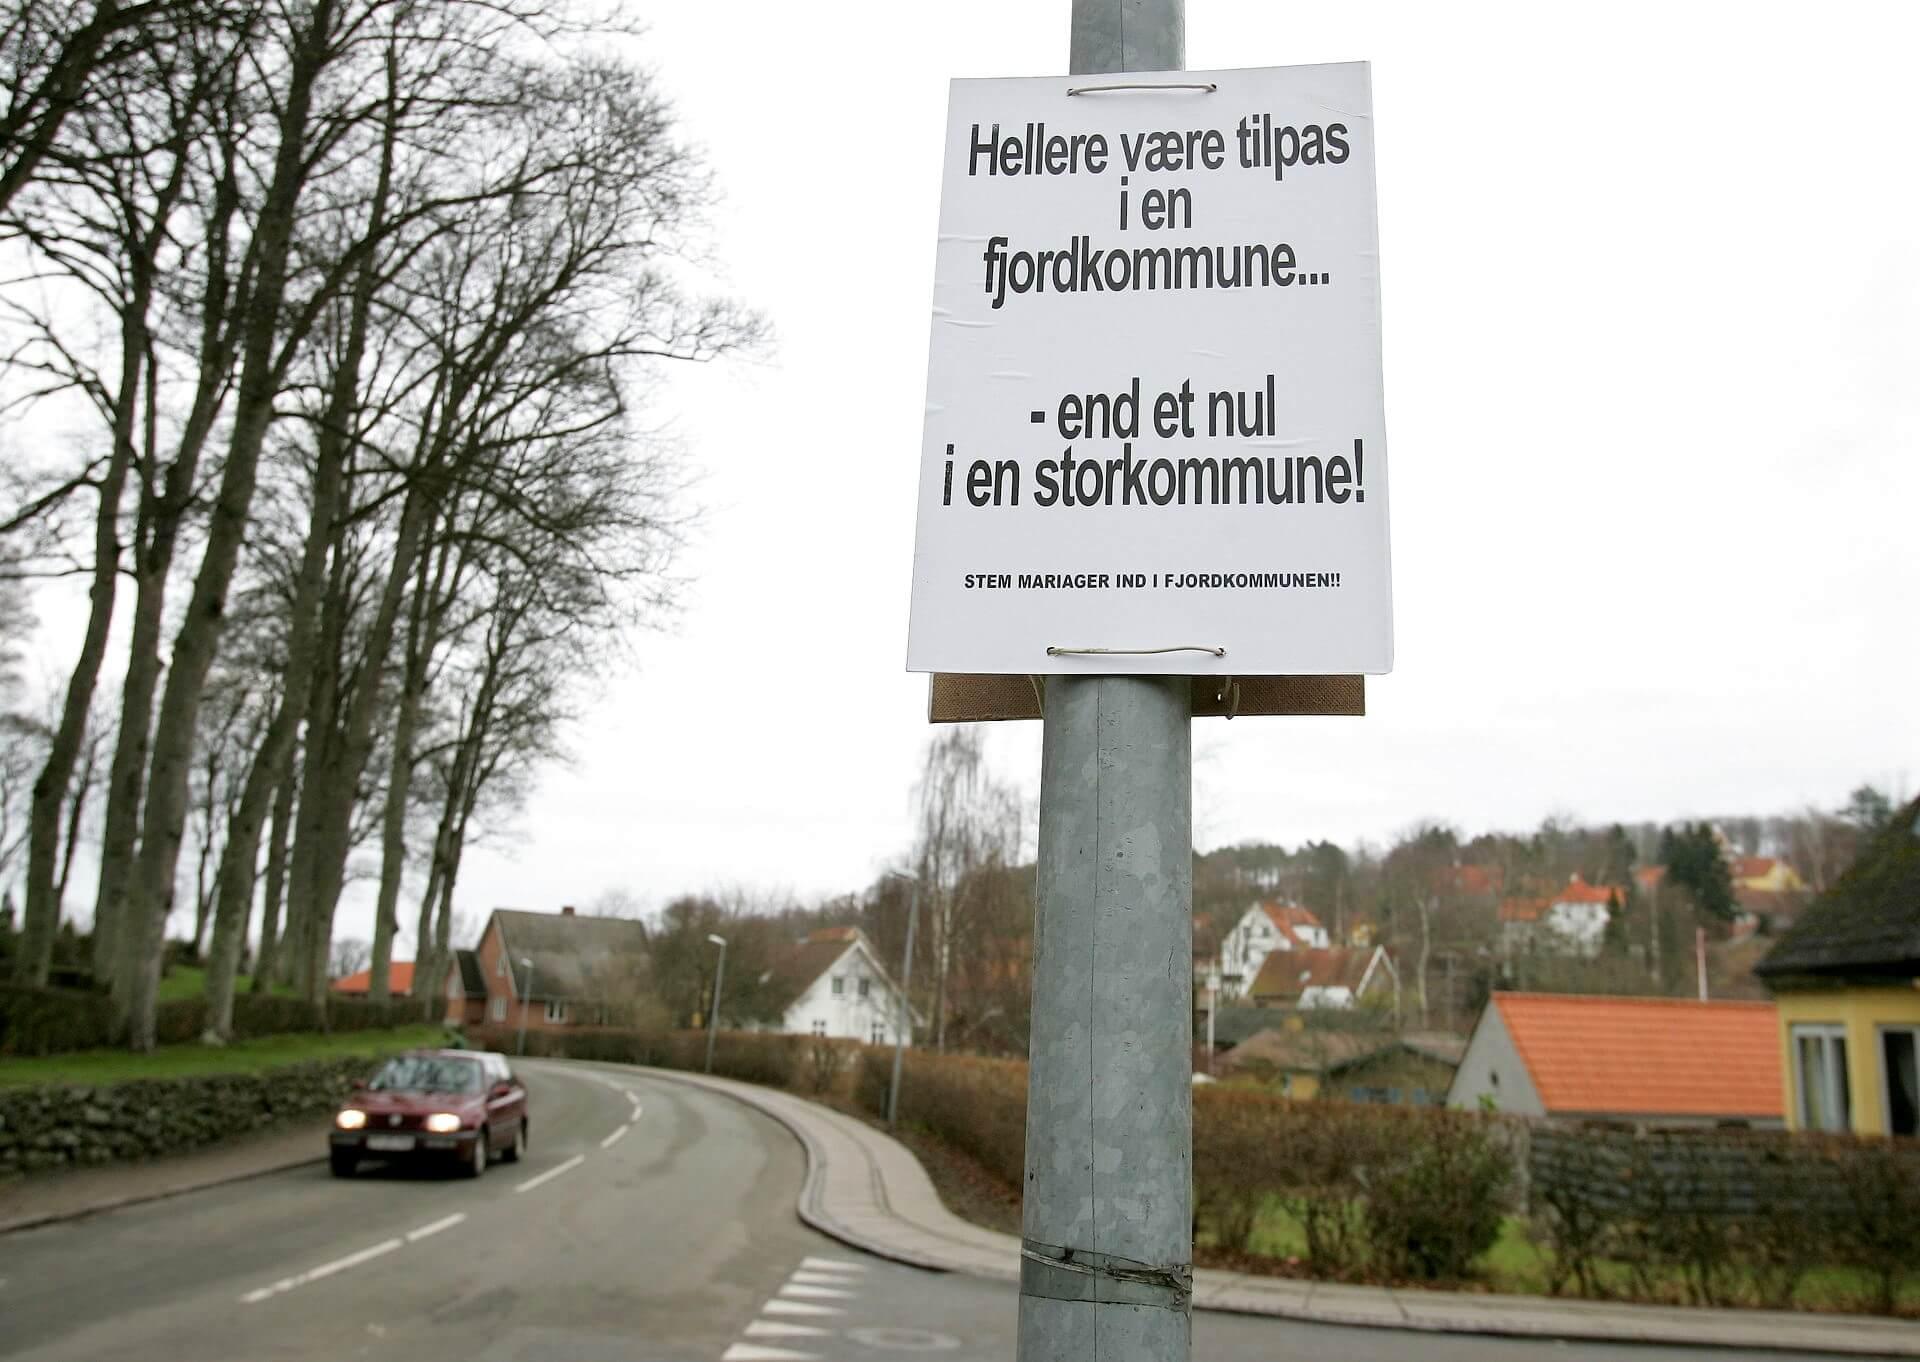 Valgplakat til folkeafstemningen i Mariager i forbindelse med kommunalreformen i 2007. Den vejledende afstemning havde to valgmuligheder: enten en storkommune med Randers og Region Midtjylland, eller en Fjordkommune med Arden, Hadsund og Hobro kommuner og samtidig Region Nordjylland. Det endte som bekendt med Mariagerfjord.